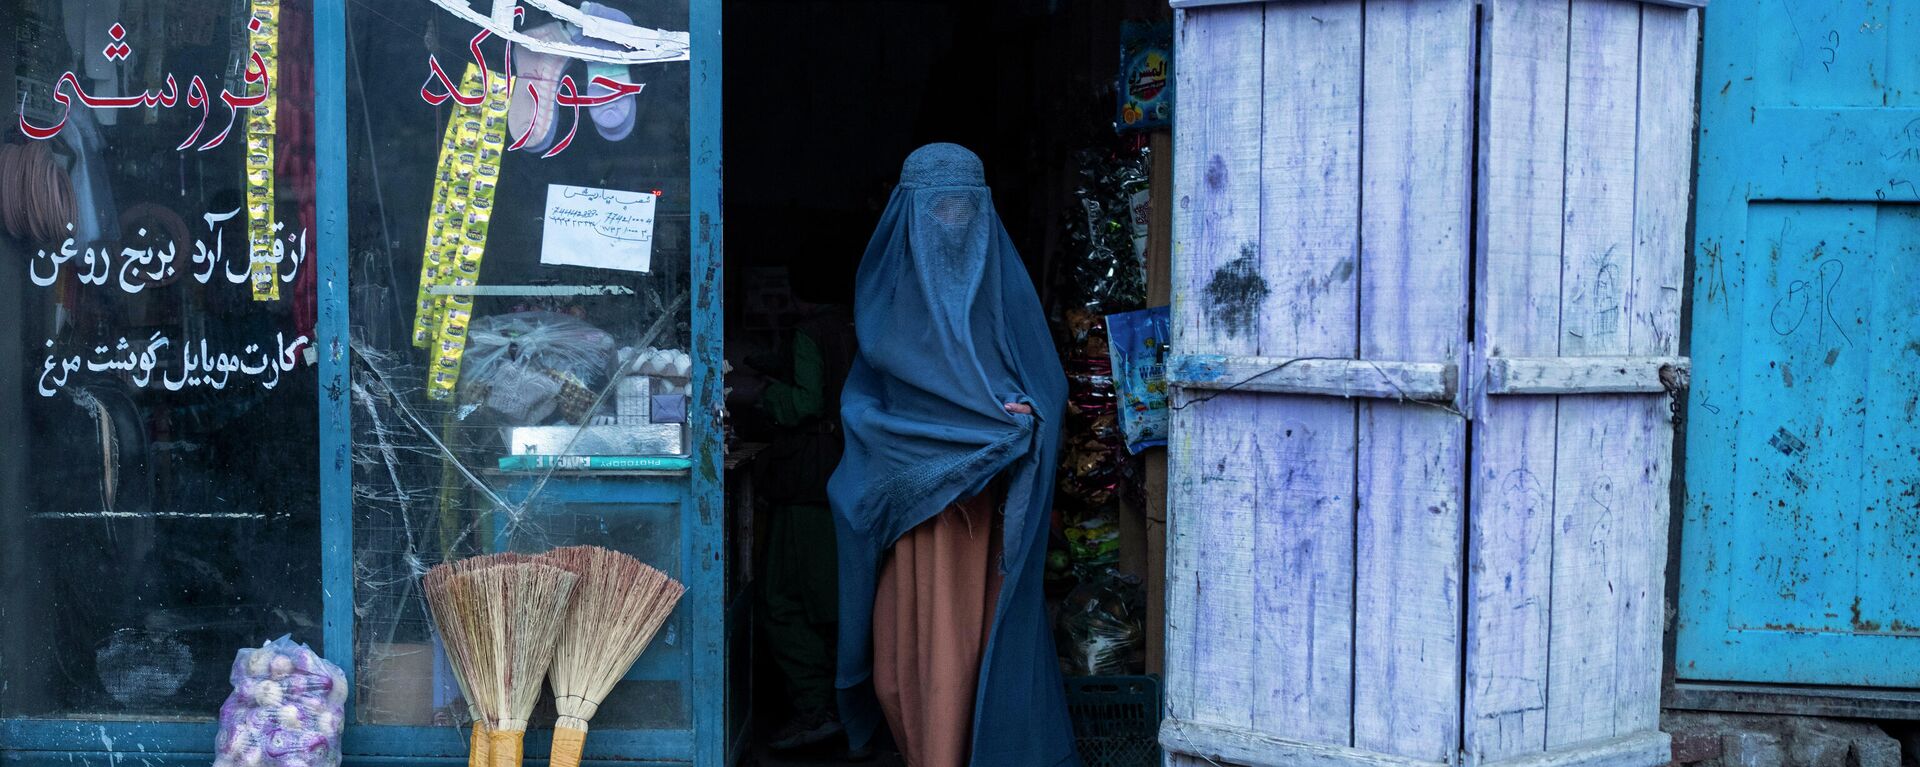 Afganistan'da burka giyen bir kadın - Sputnik Türkiye, 1920, 31.12.2021